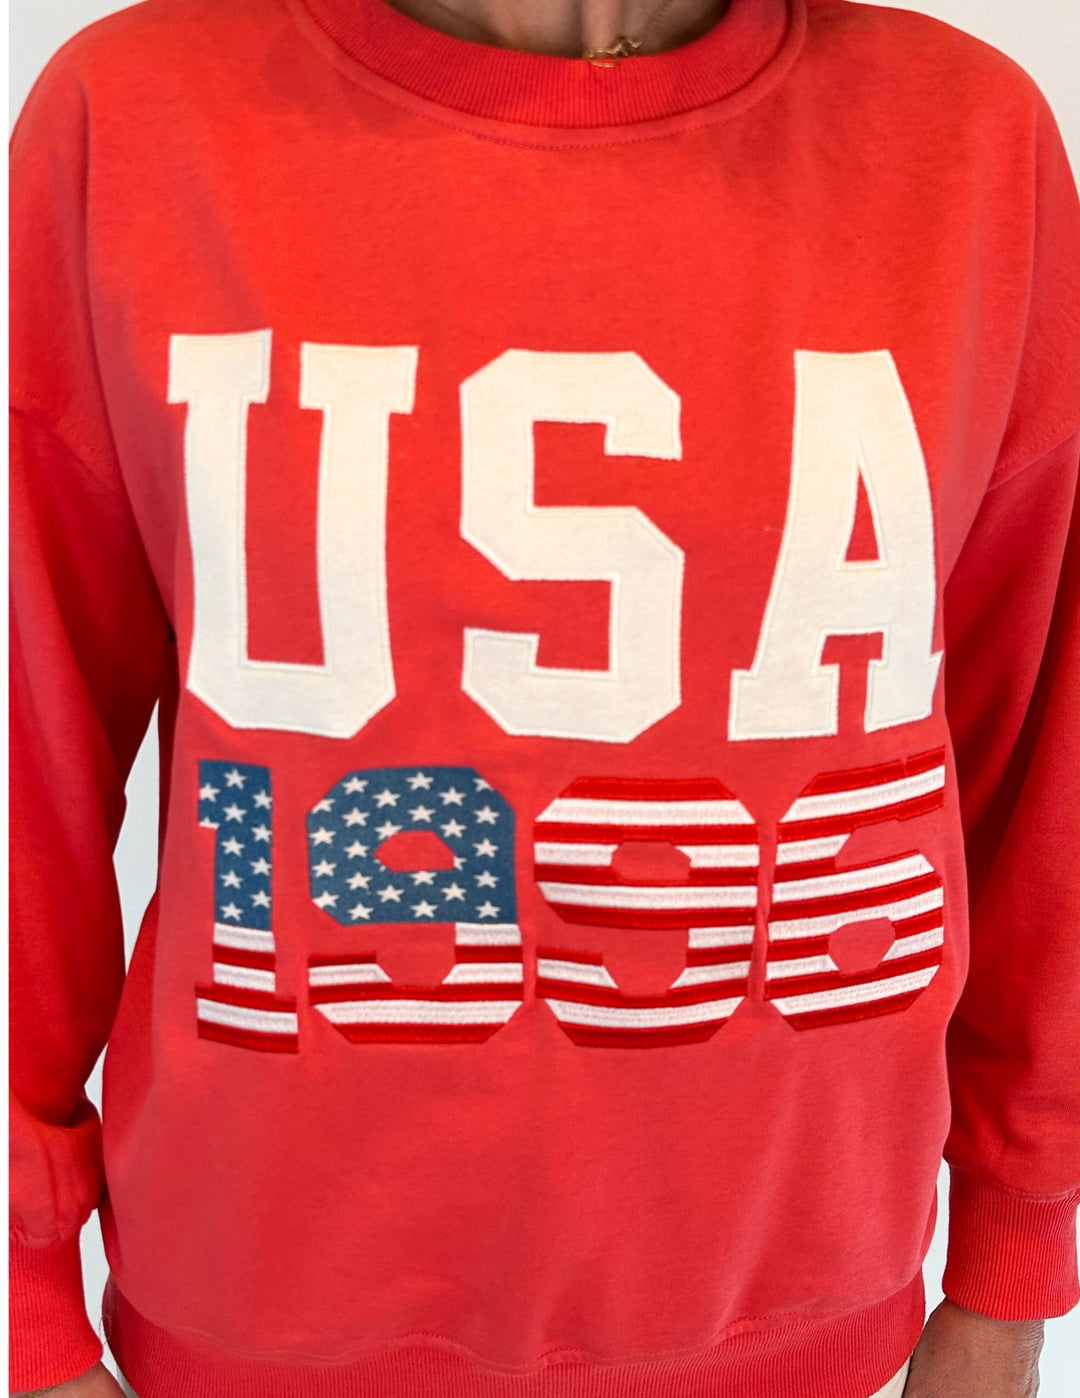 USA 1996 Sweatshirt